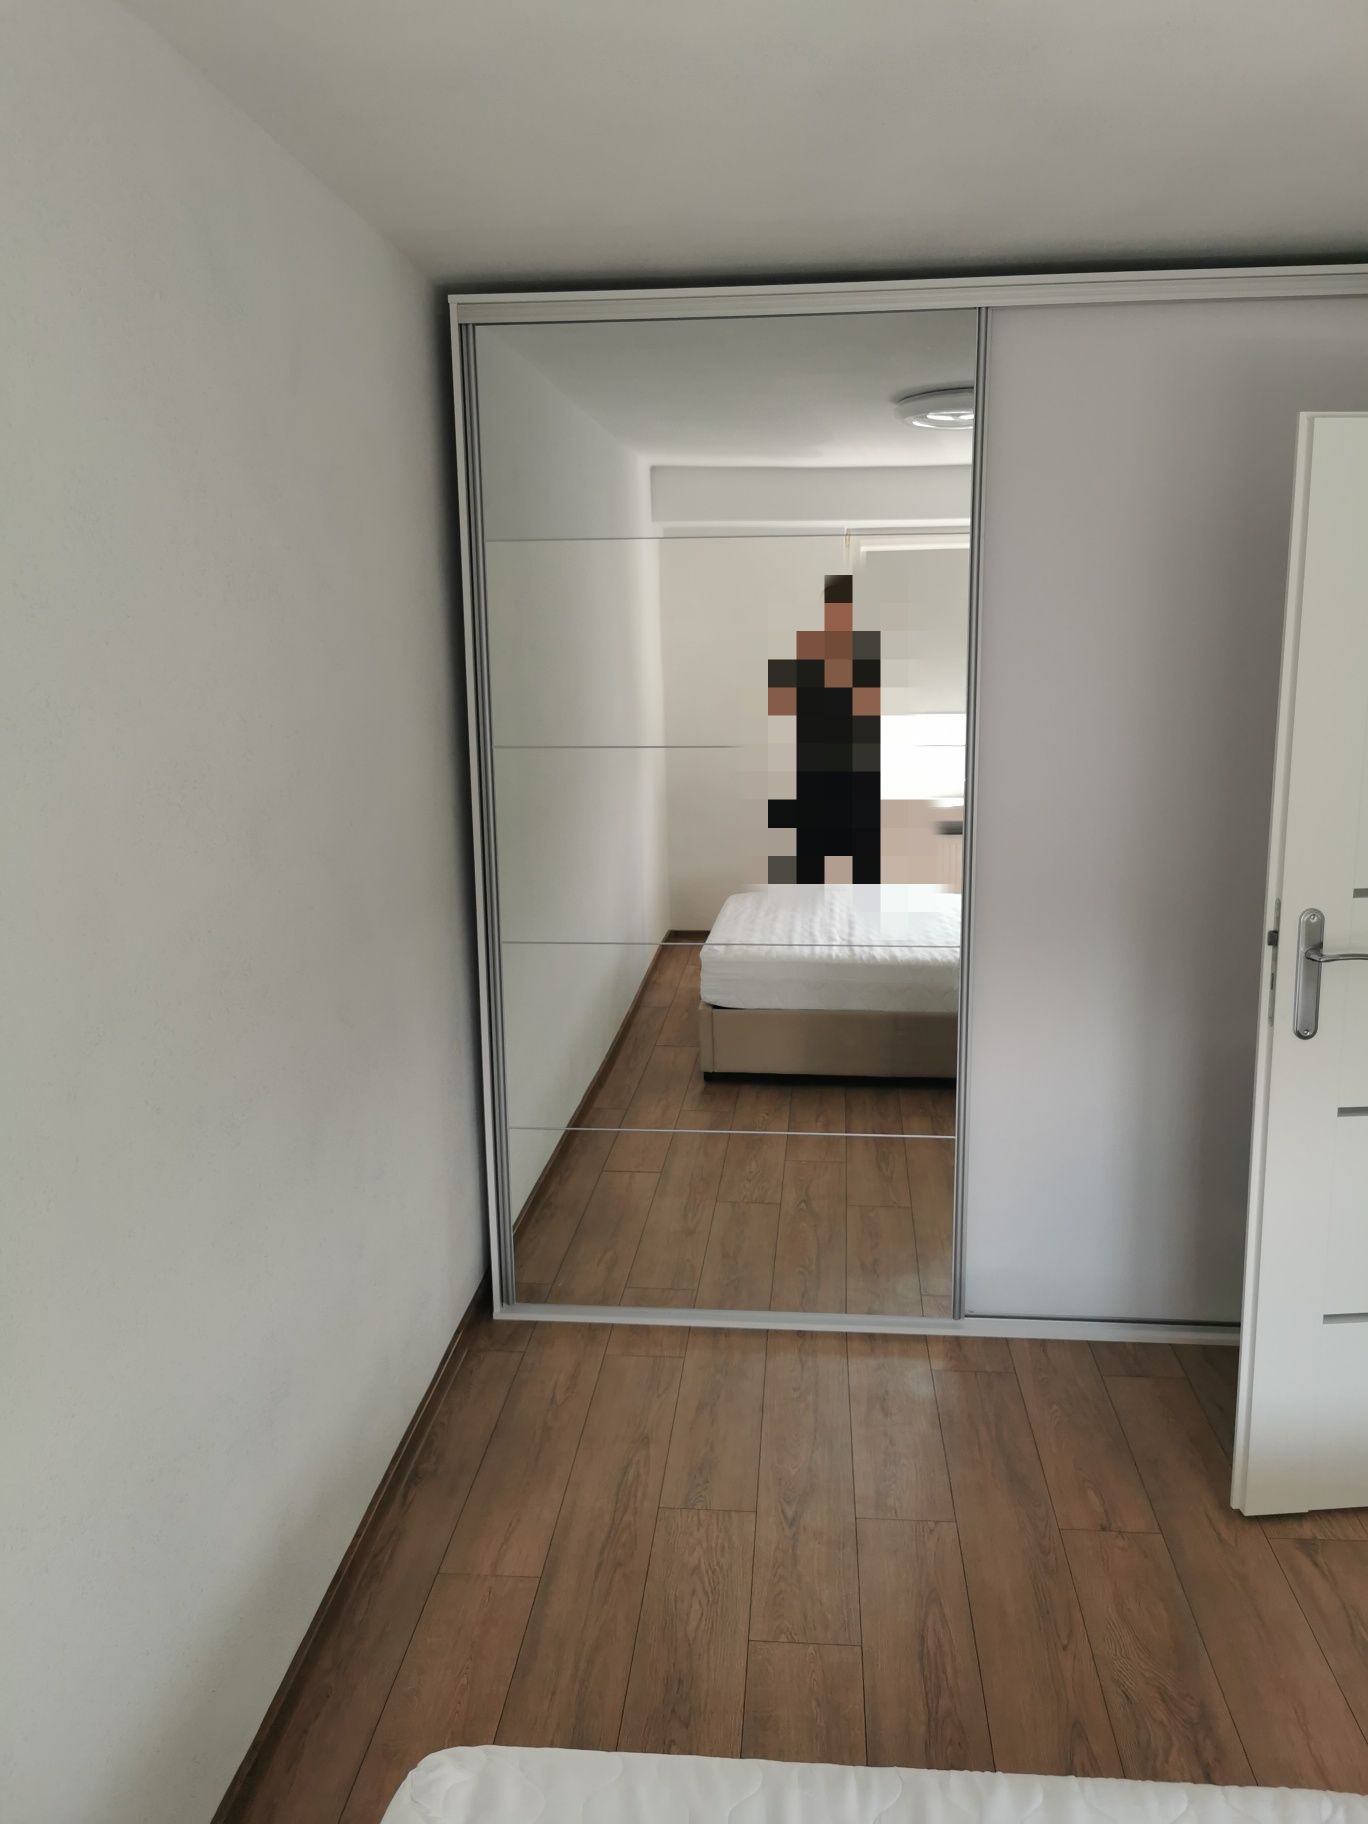 Mieszkanie 37 m2, 2 pokoje Kalina Okrzei wolne od 01.06